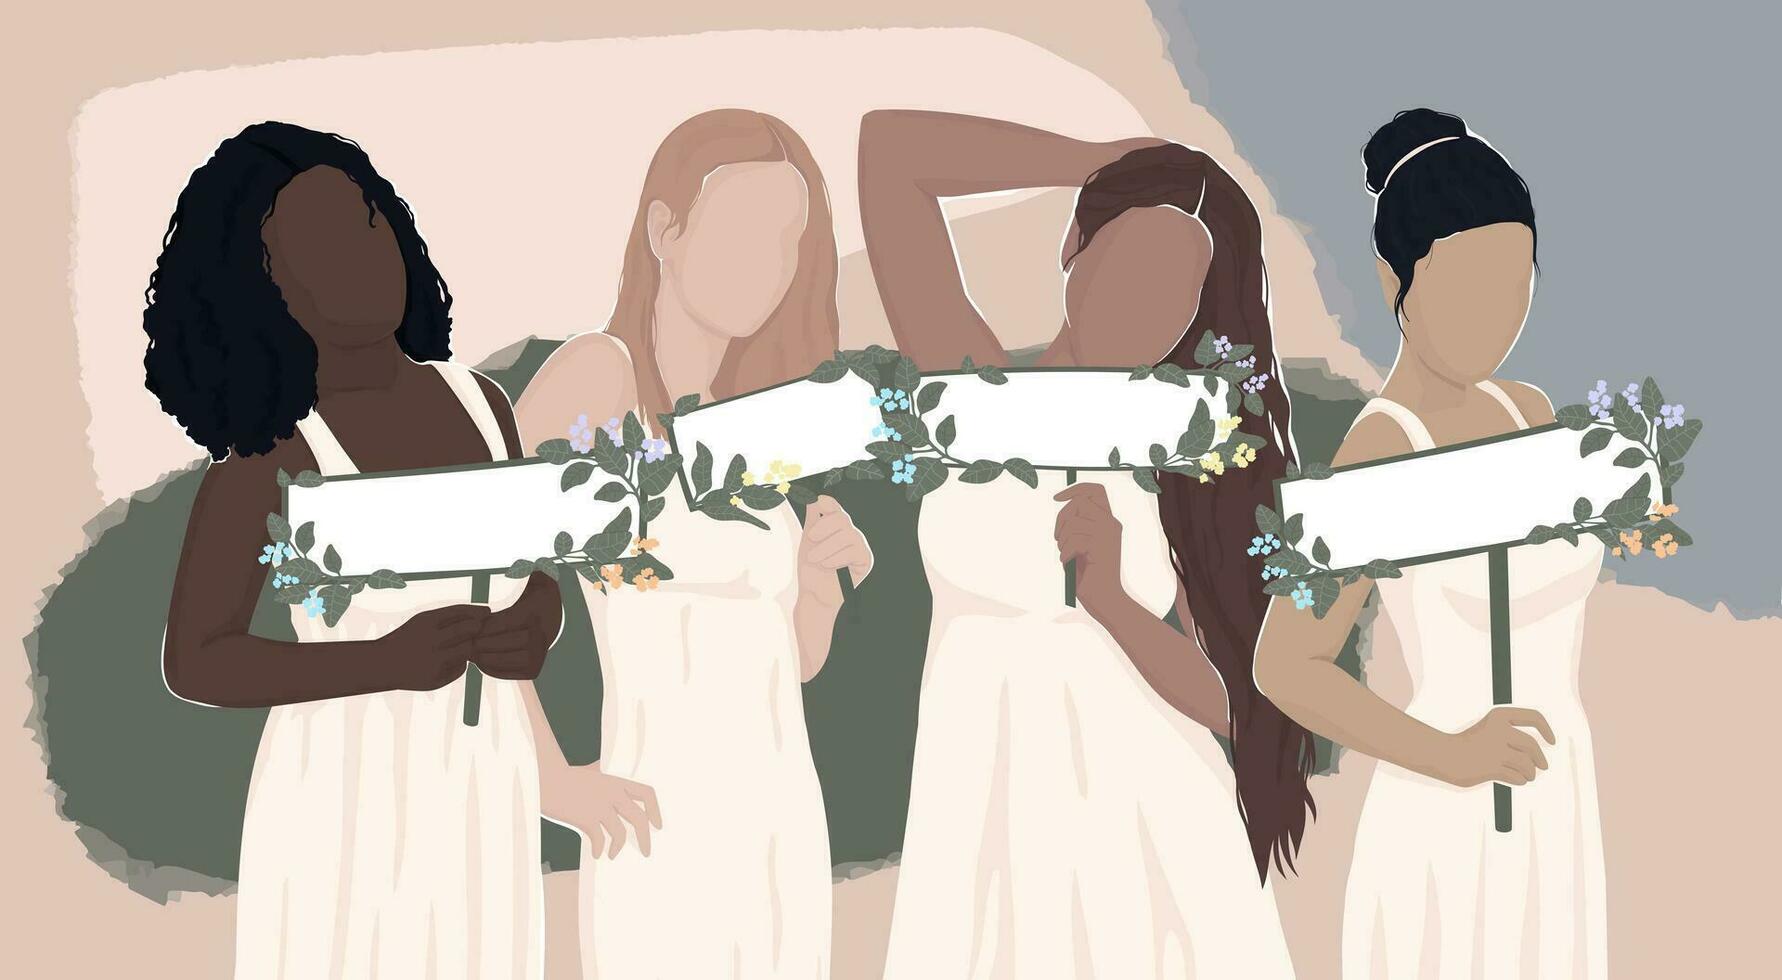 vier anders Frauen im Weiß Roben sind halten leer Banner dekoriert mit Blumen zum Ihre Text. Vektor Licht natürlich modern eben Illustration. zum Banner, Postkarte, Poster, Zeitschrift Abdeckung.